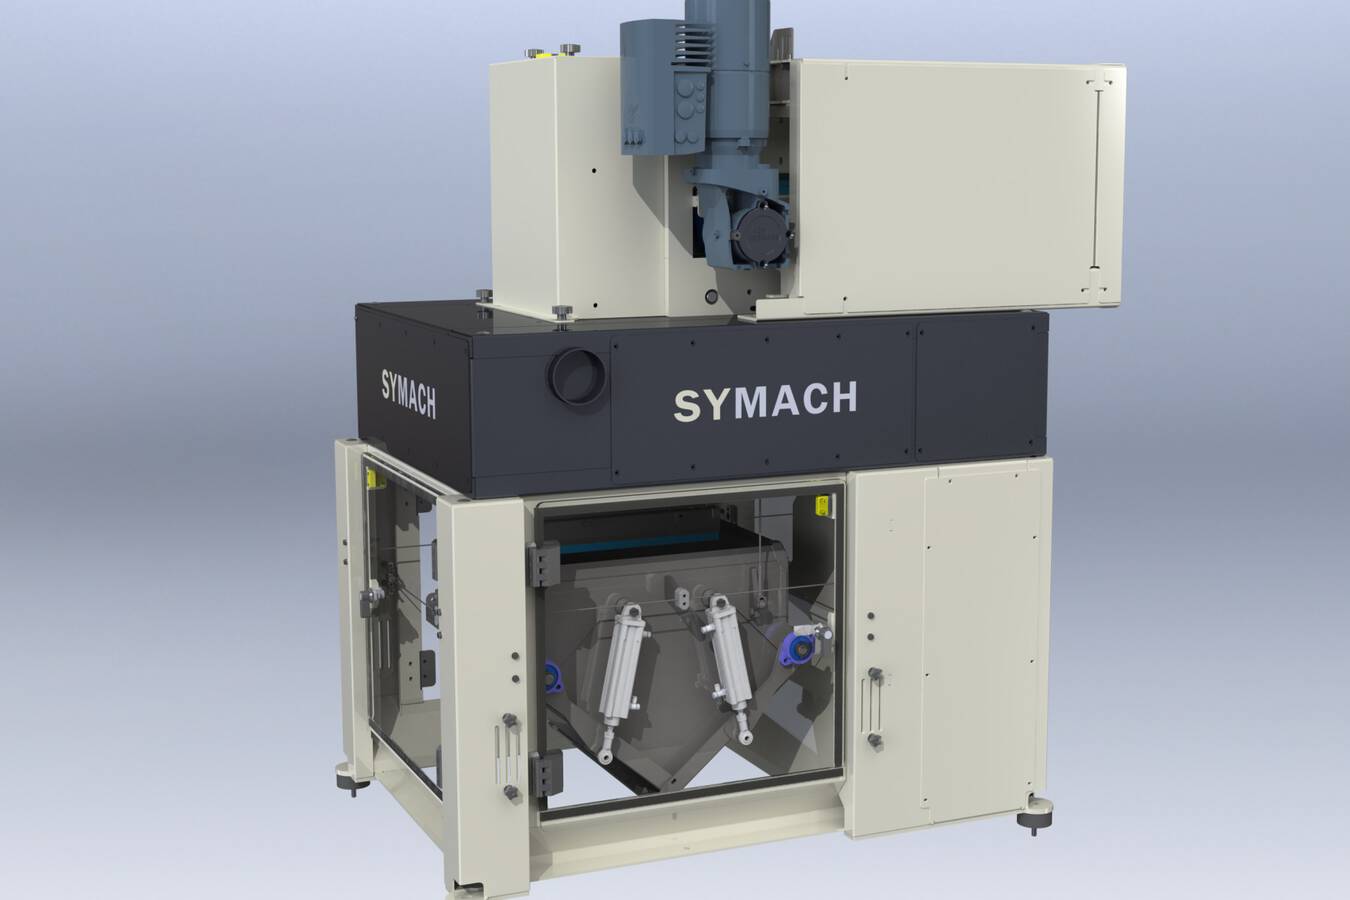 SYMACH entwirft, fertigt und integriert Gewichtsdosiersysteme SYMACH entwirft und fertigt komplette Absackanlagen. In Verbindung mit der Absackanlage ist das Gewichtsdosiersystem nun Teil der von SYMACH entwickelten und hergestellten Ausrüstung.